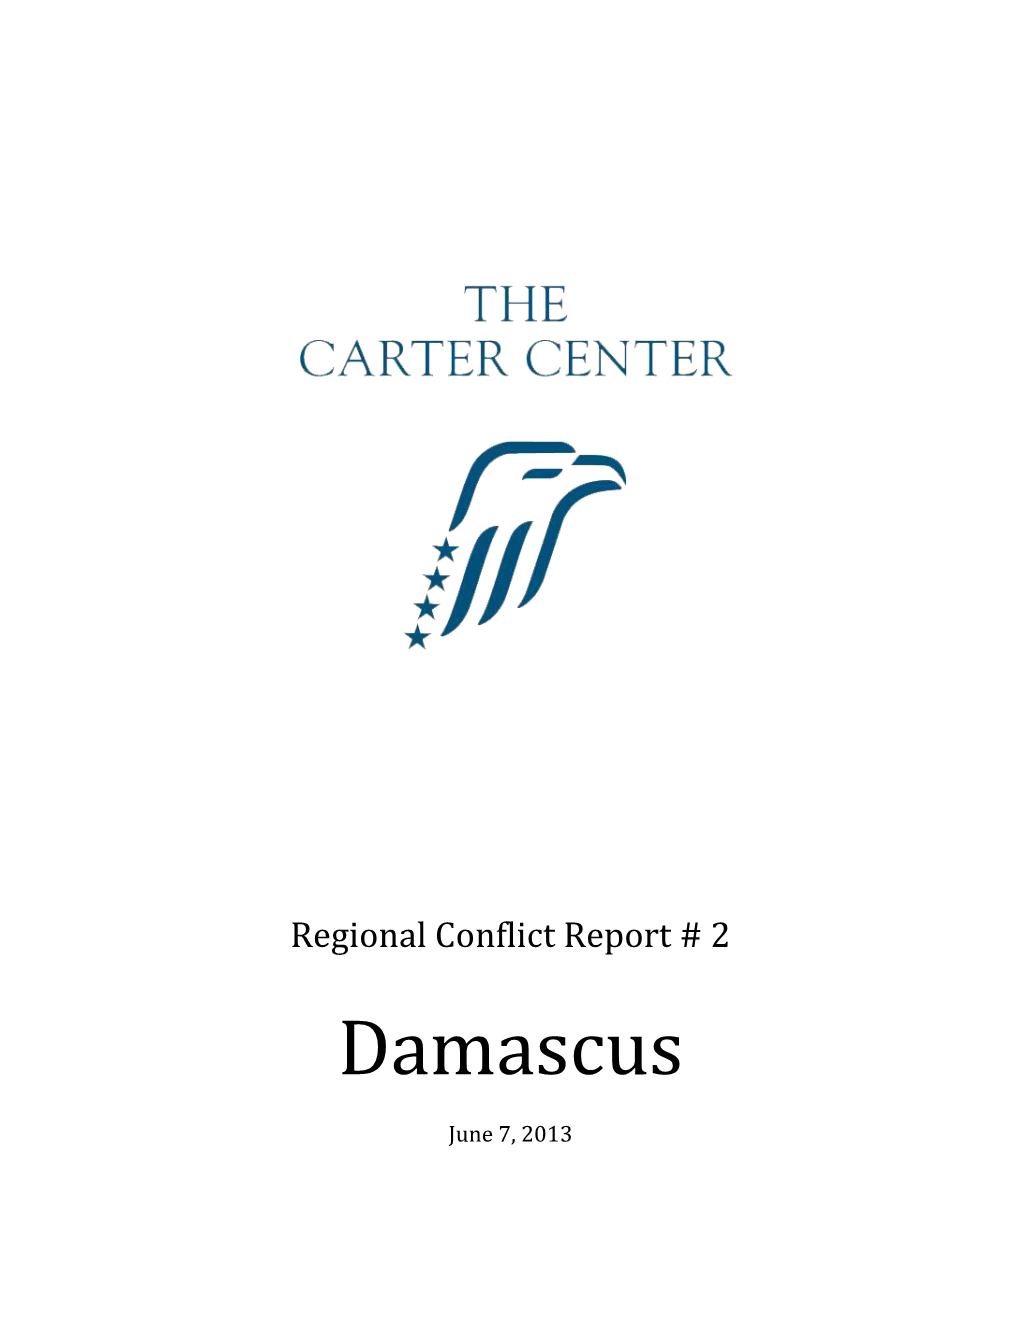 Regional Conflict Report # 2: Damascus - June 7, 2013